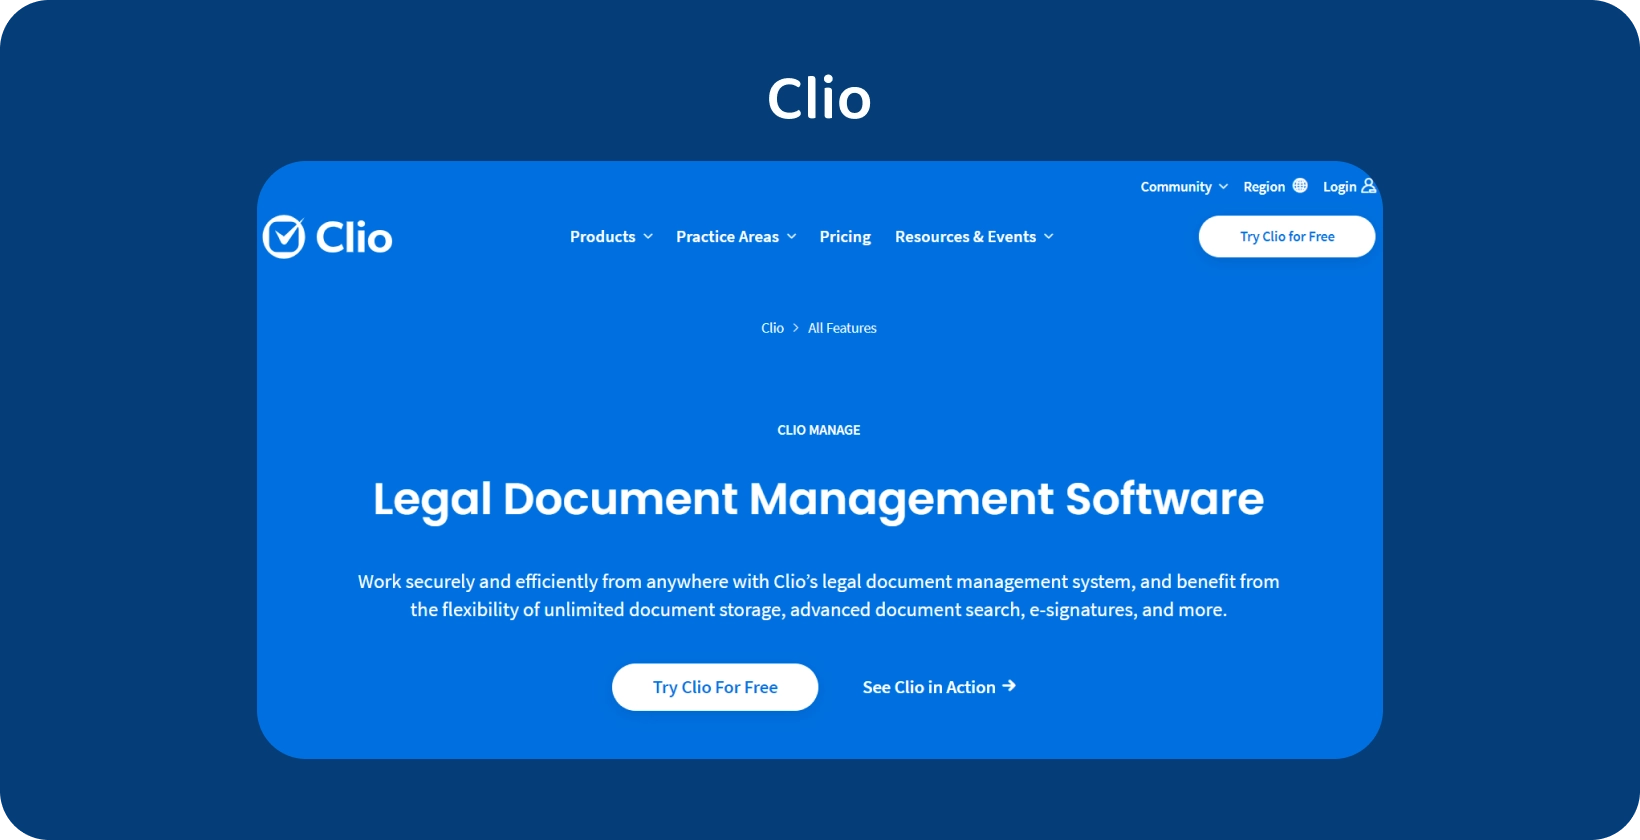 Antara muka pengguna Clio mempamerkan Perisian Pengurusan Dokumen Undang-undang, mengoptimumkan pengendalian rekod teratur.